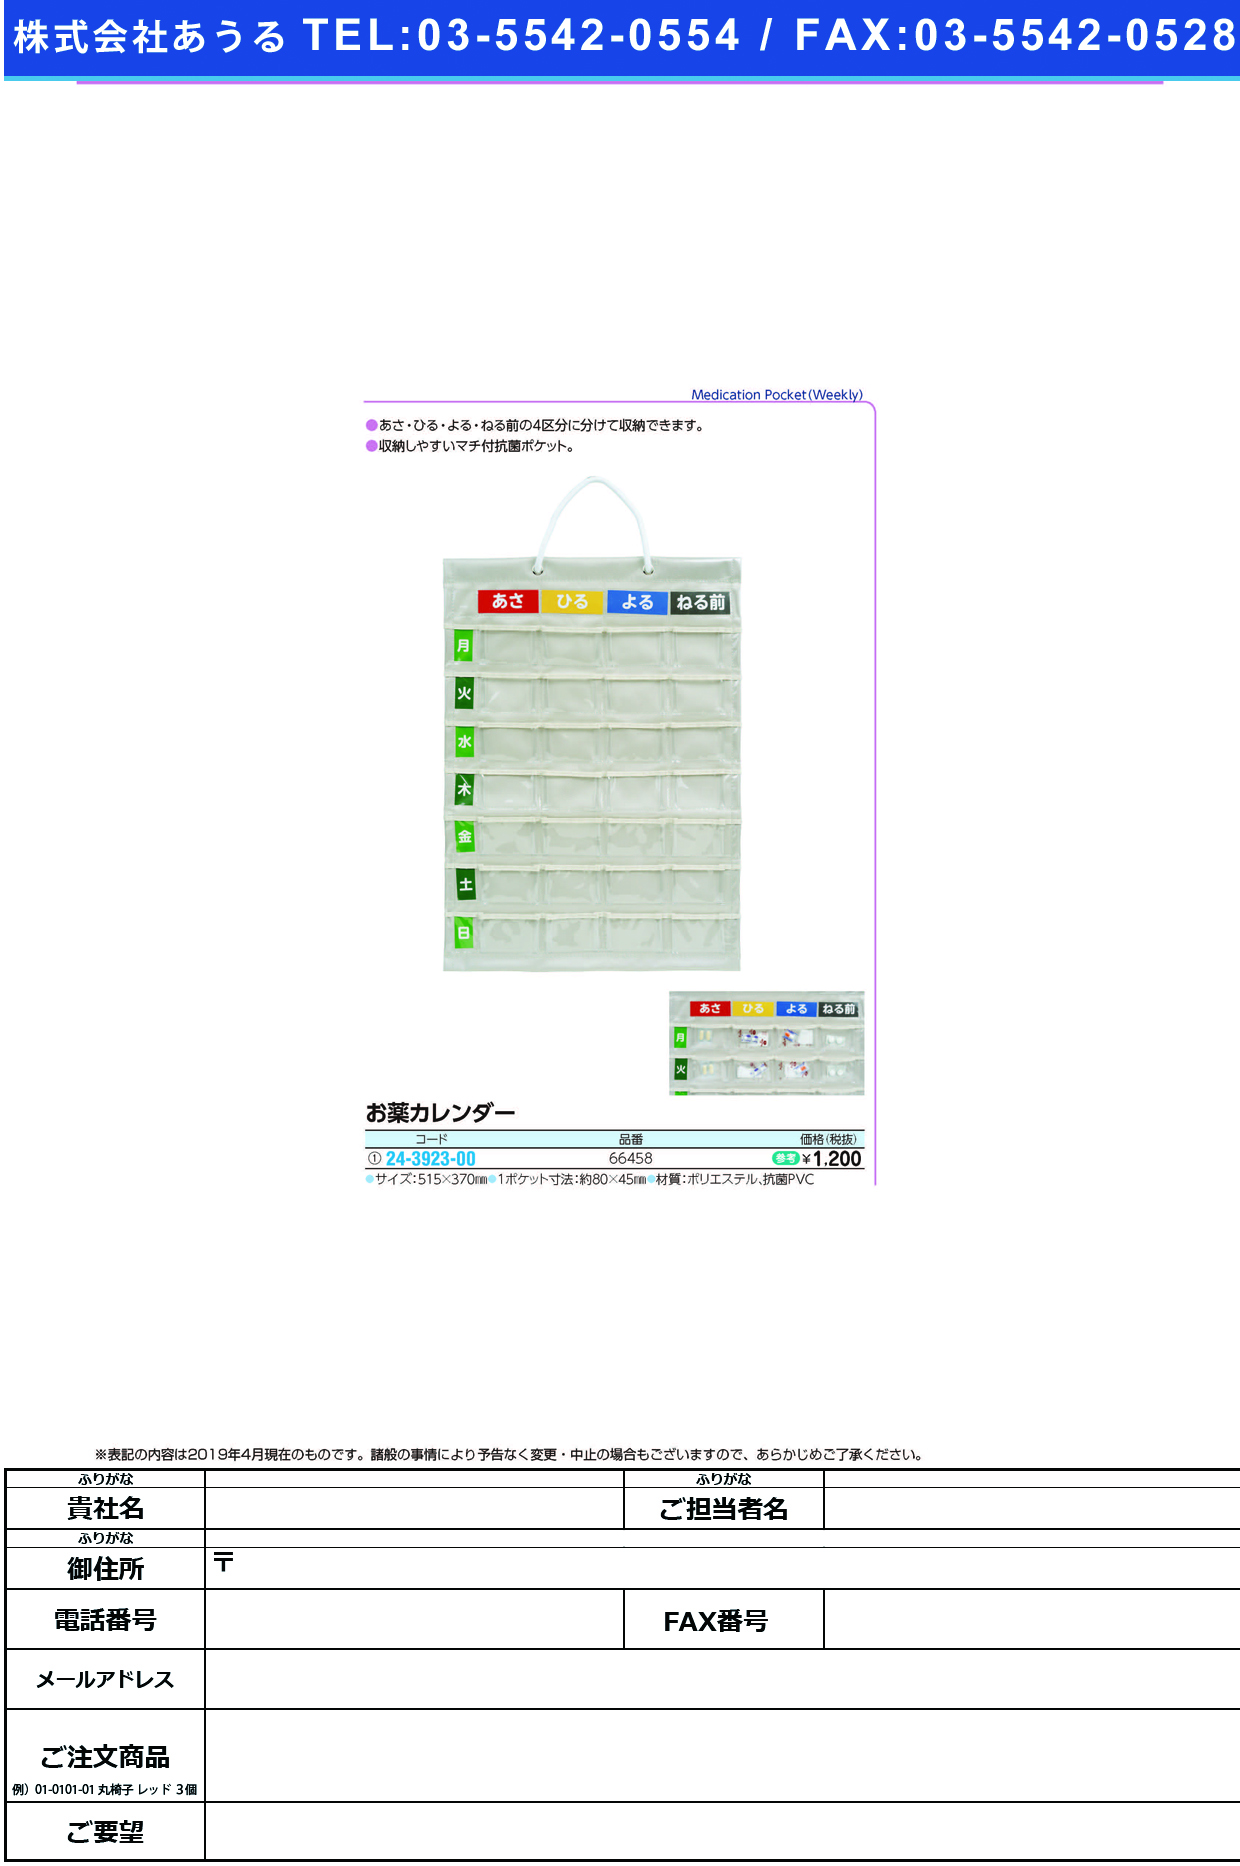 お薬カレンダー IF-3010(66458) ｵｸｽﾘｶﾚﾝﾀﾞｰ(ナカバヤシ)